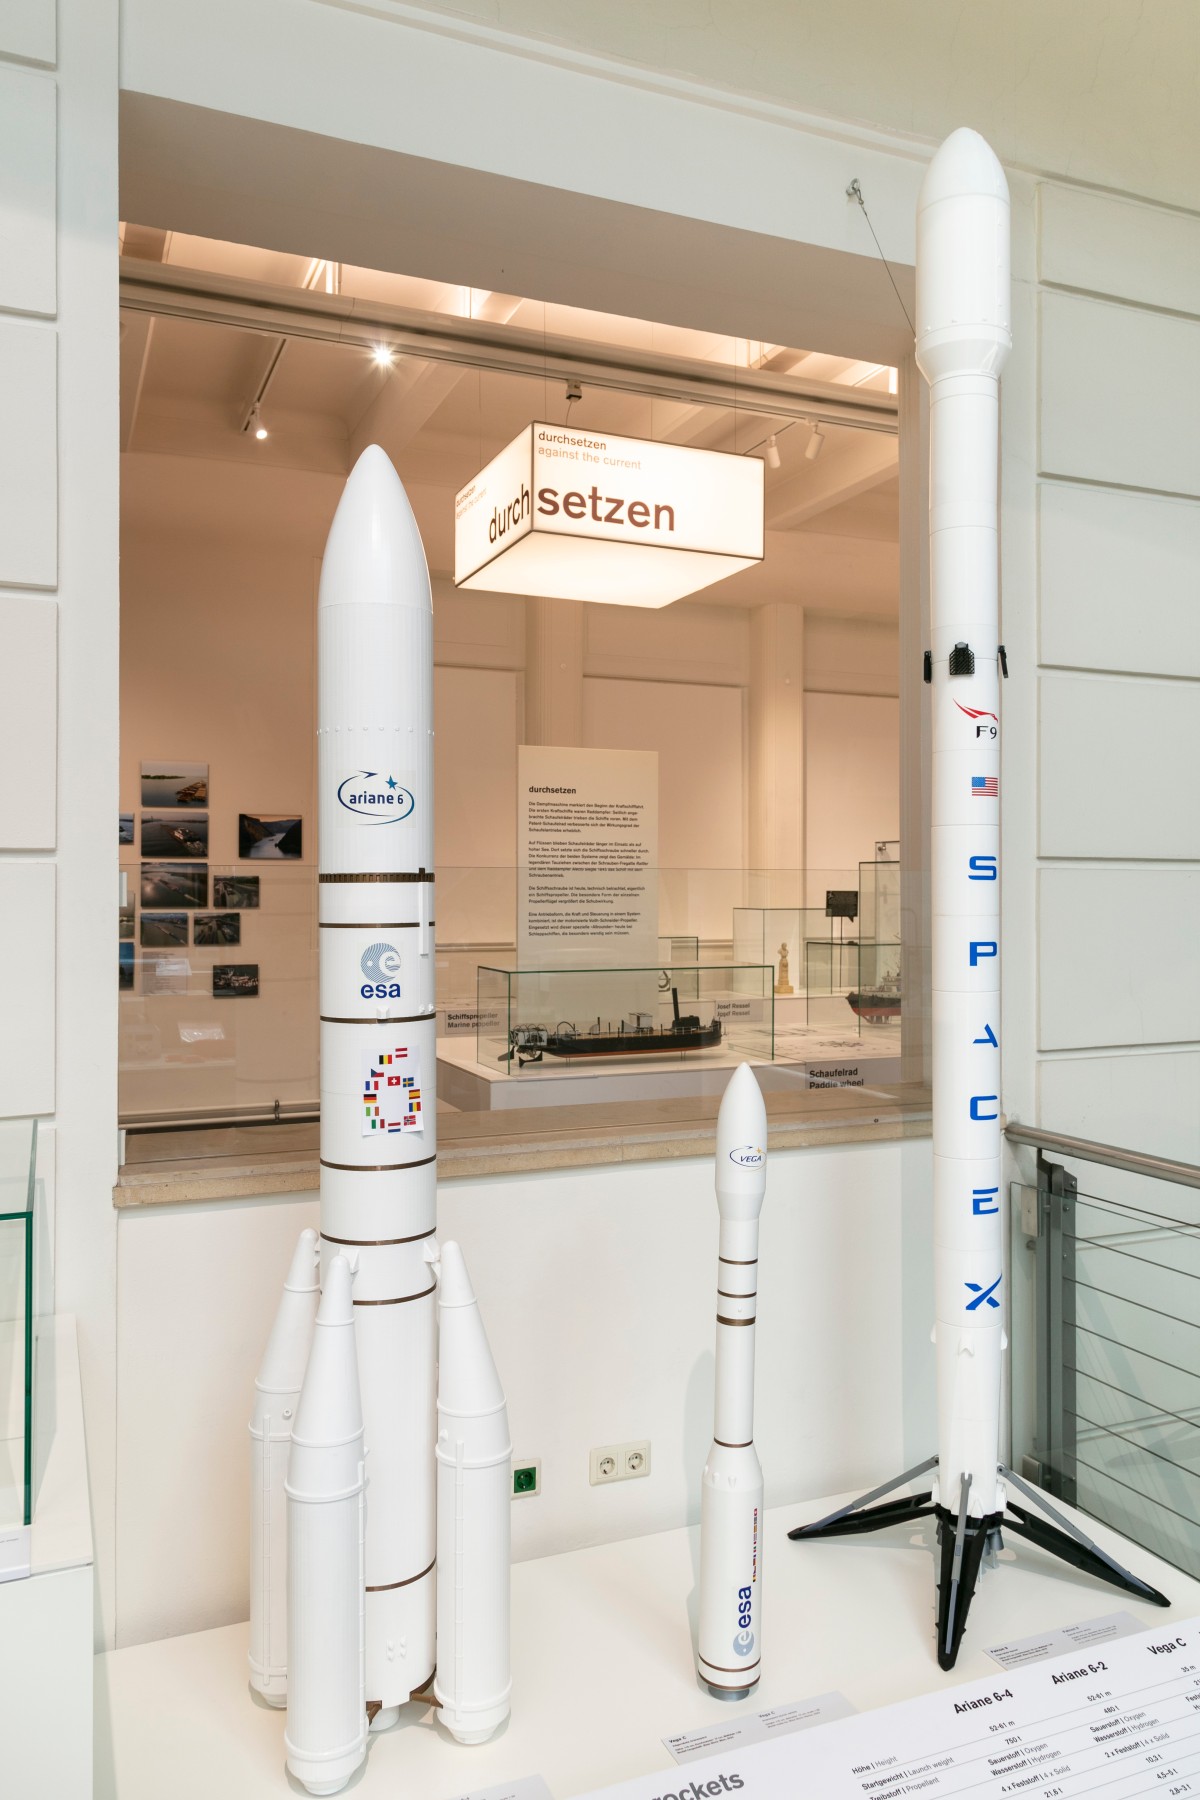 Modelle der Ariane 6, Vega C und der Falcon 9 in der Dauerausstellung des Technischen Museums Wien: Modelle der Ariane 6, Vega C und der Falcon 9 in der Dauerausstellung des Technischen Museums Wien